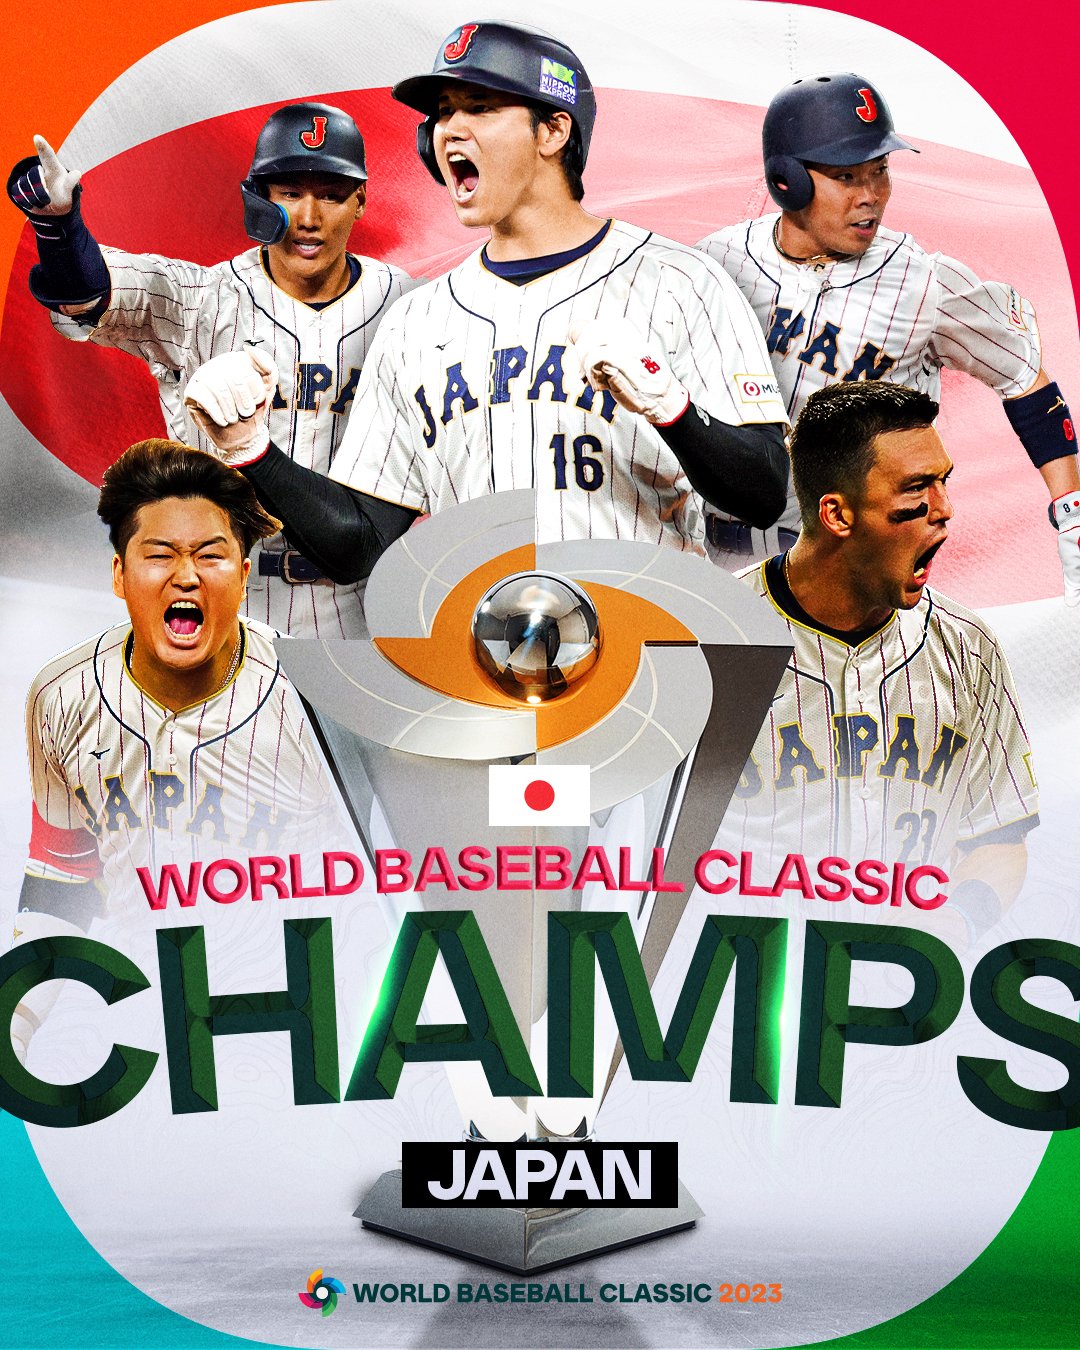 日本3-2击败卫冕冠军美国，第3次夺得世界棒球经典赛冠军